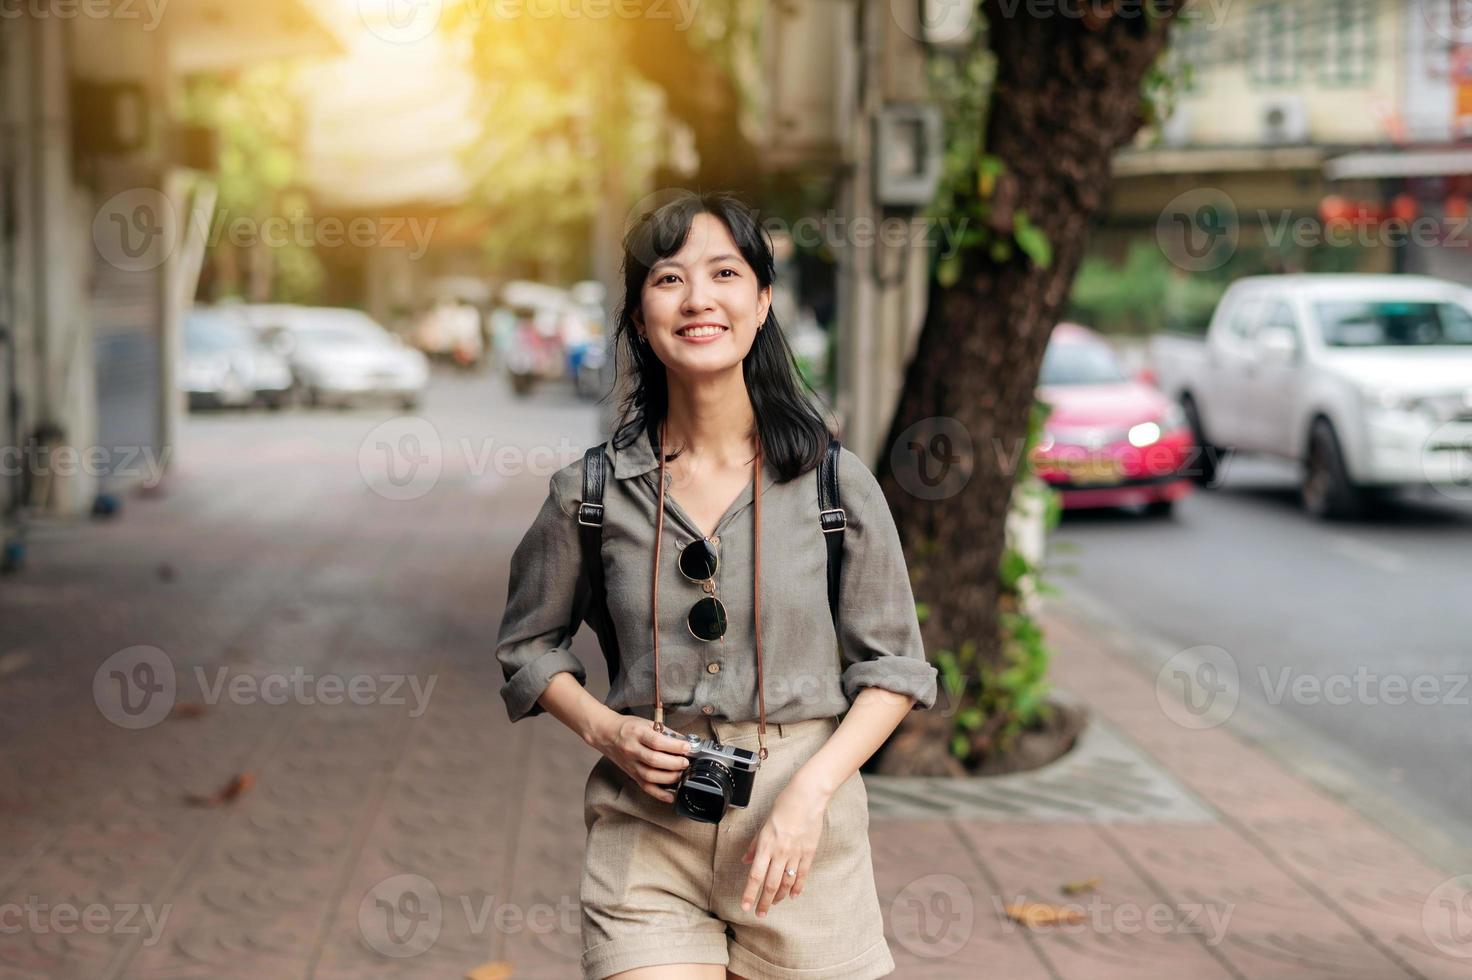 joven asiático mujer mochila viajero utilizando digital compacto cámara, disfrutando calle cultural local sitio y sonrisa. viajero comprobación fuera lado calles foto